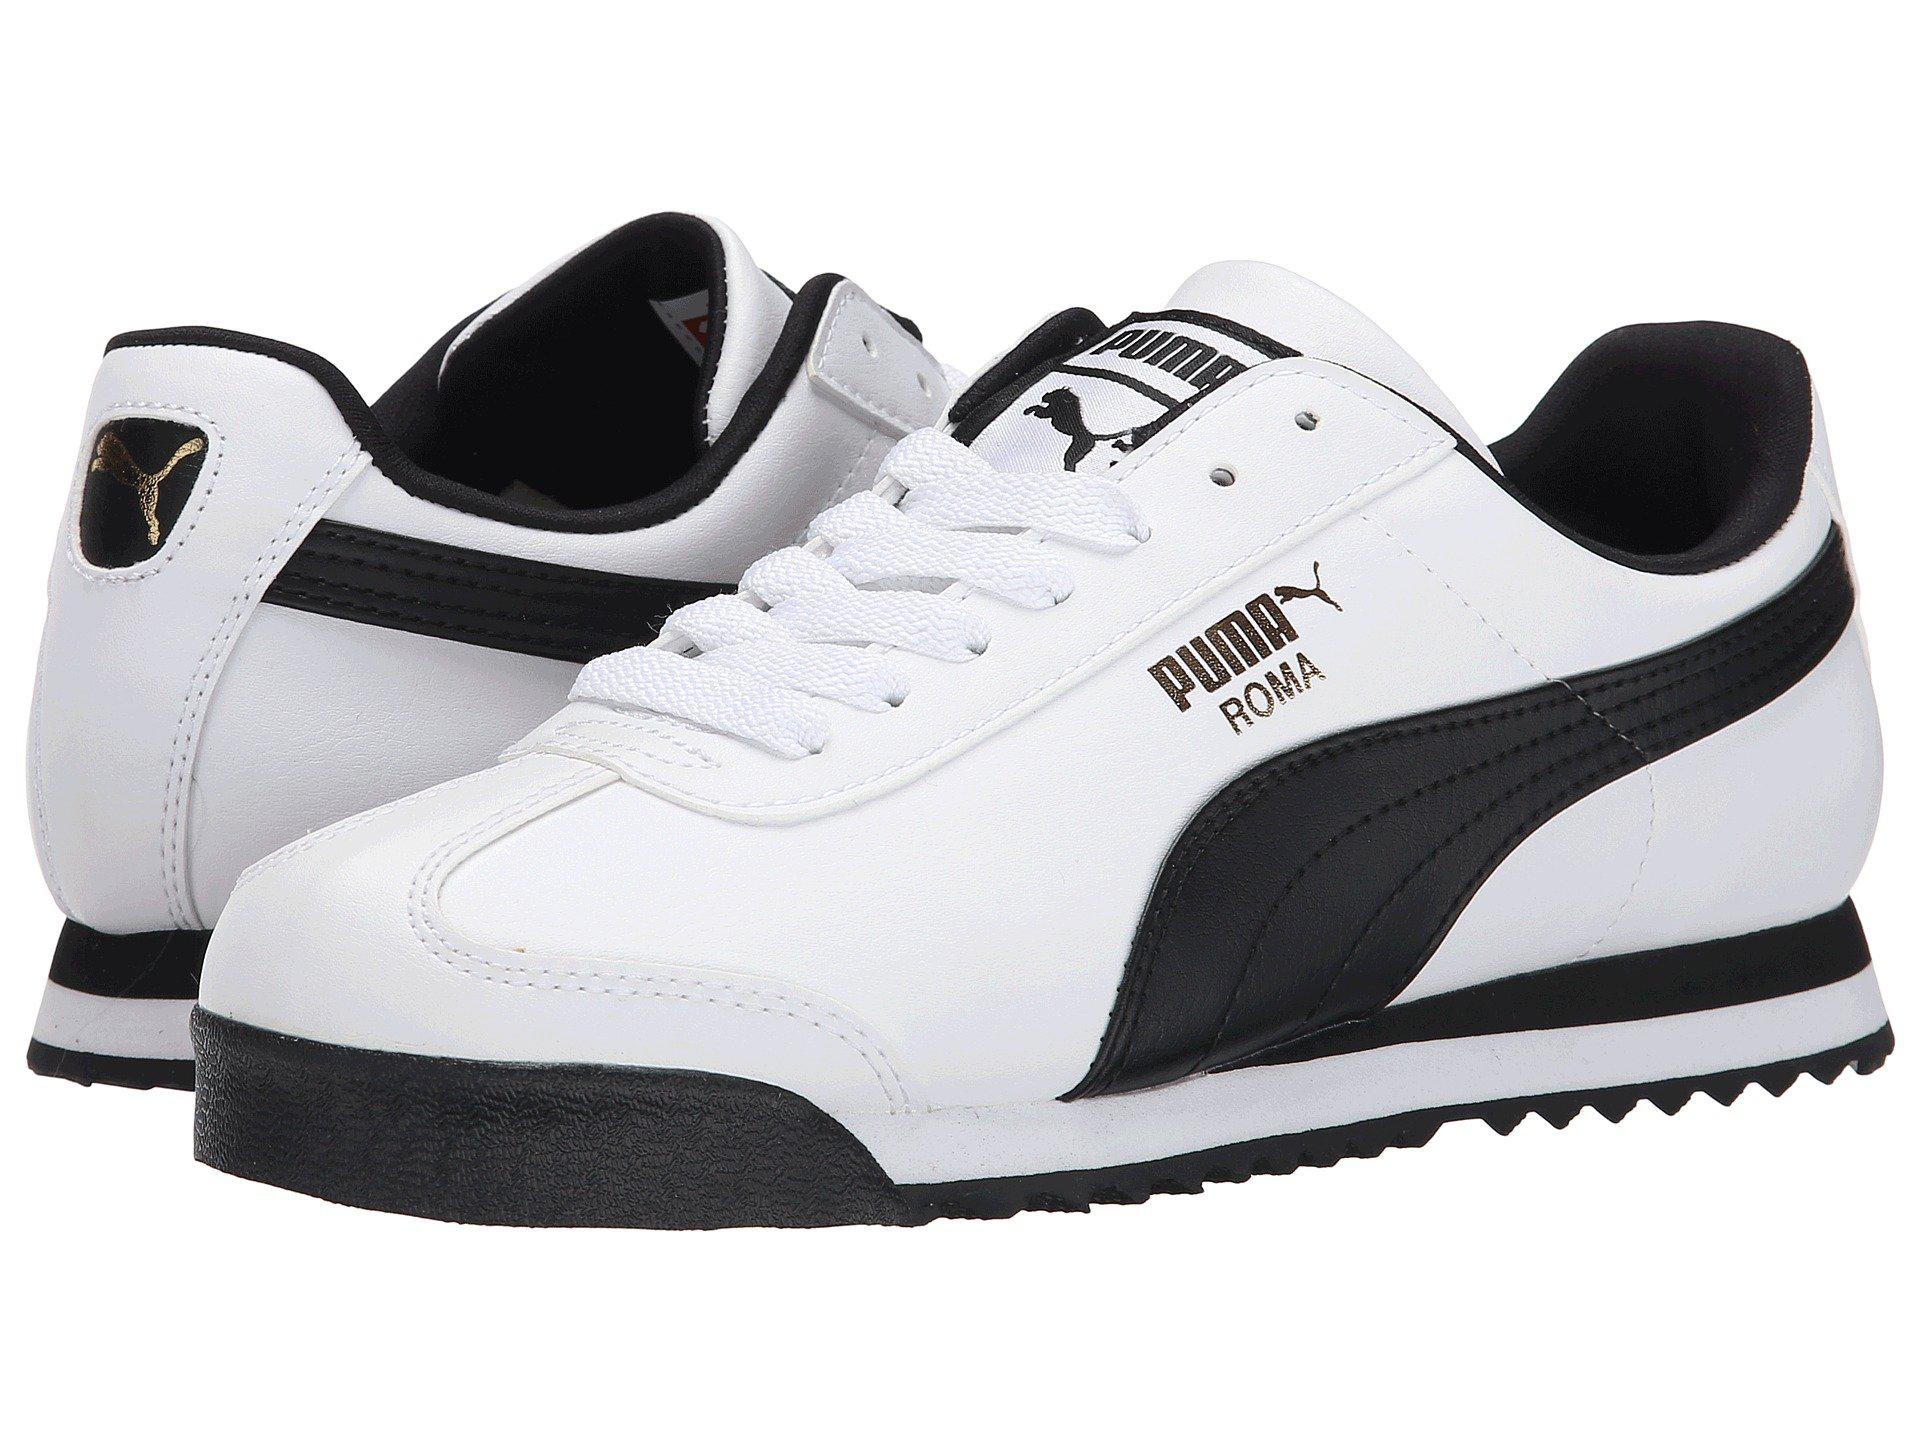 Lyst - Puma Roma Basic (black/black) Men's Shoes in White for Men